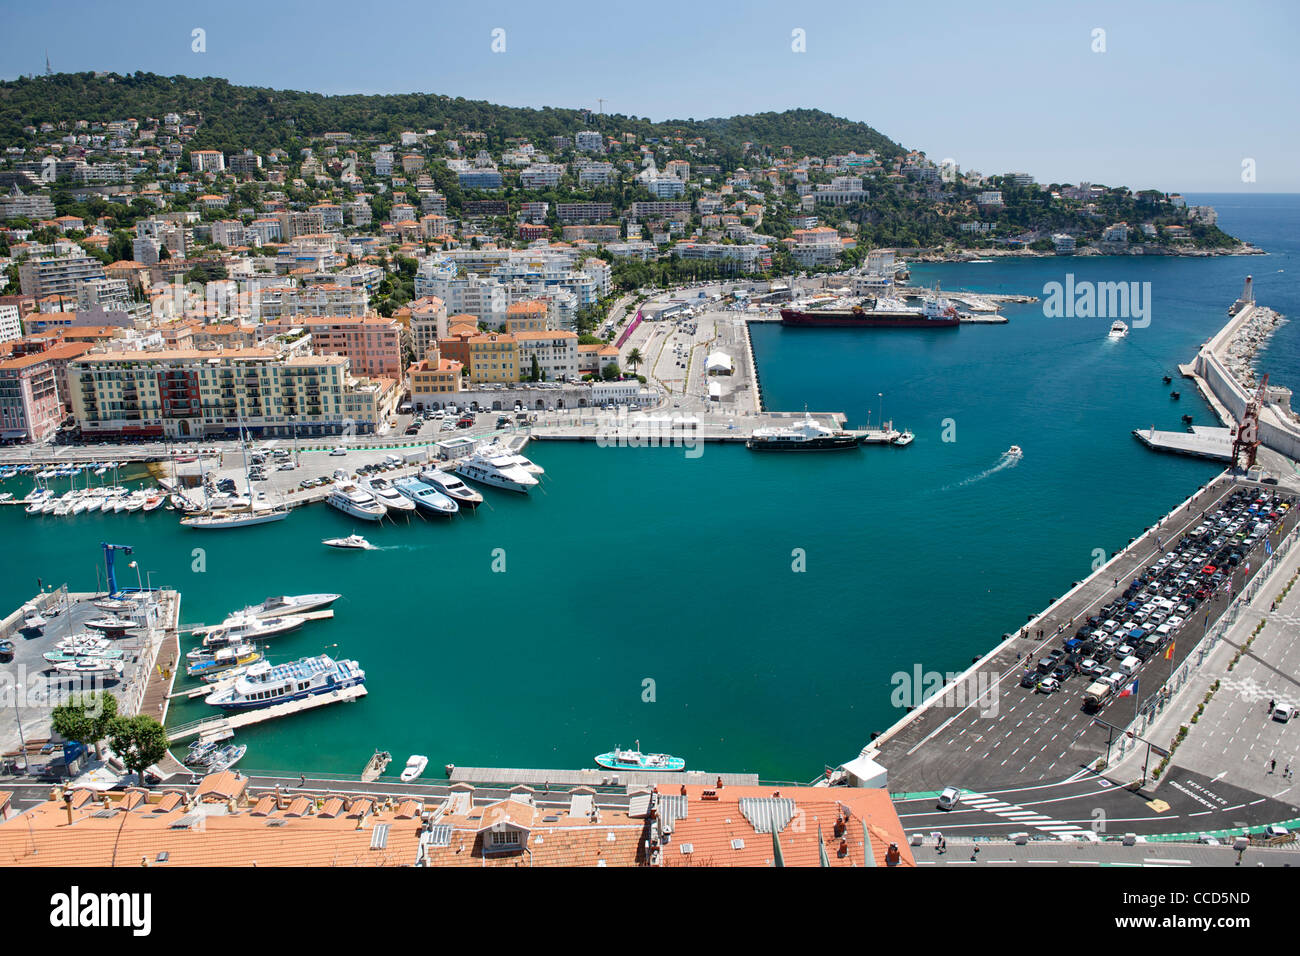 Il porto di Nizza sulla costa mediterranea nel sud della Francia. Foto Stock